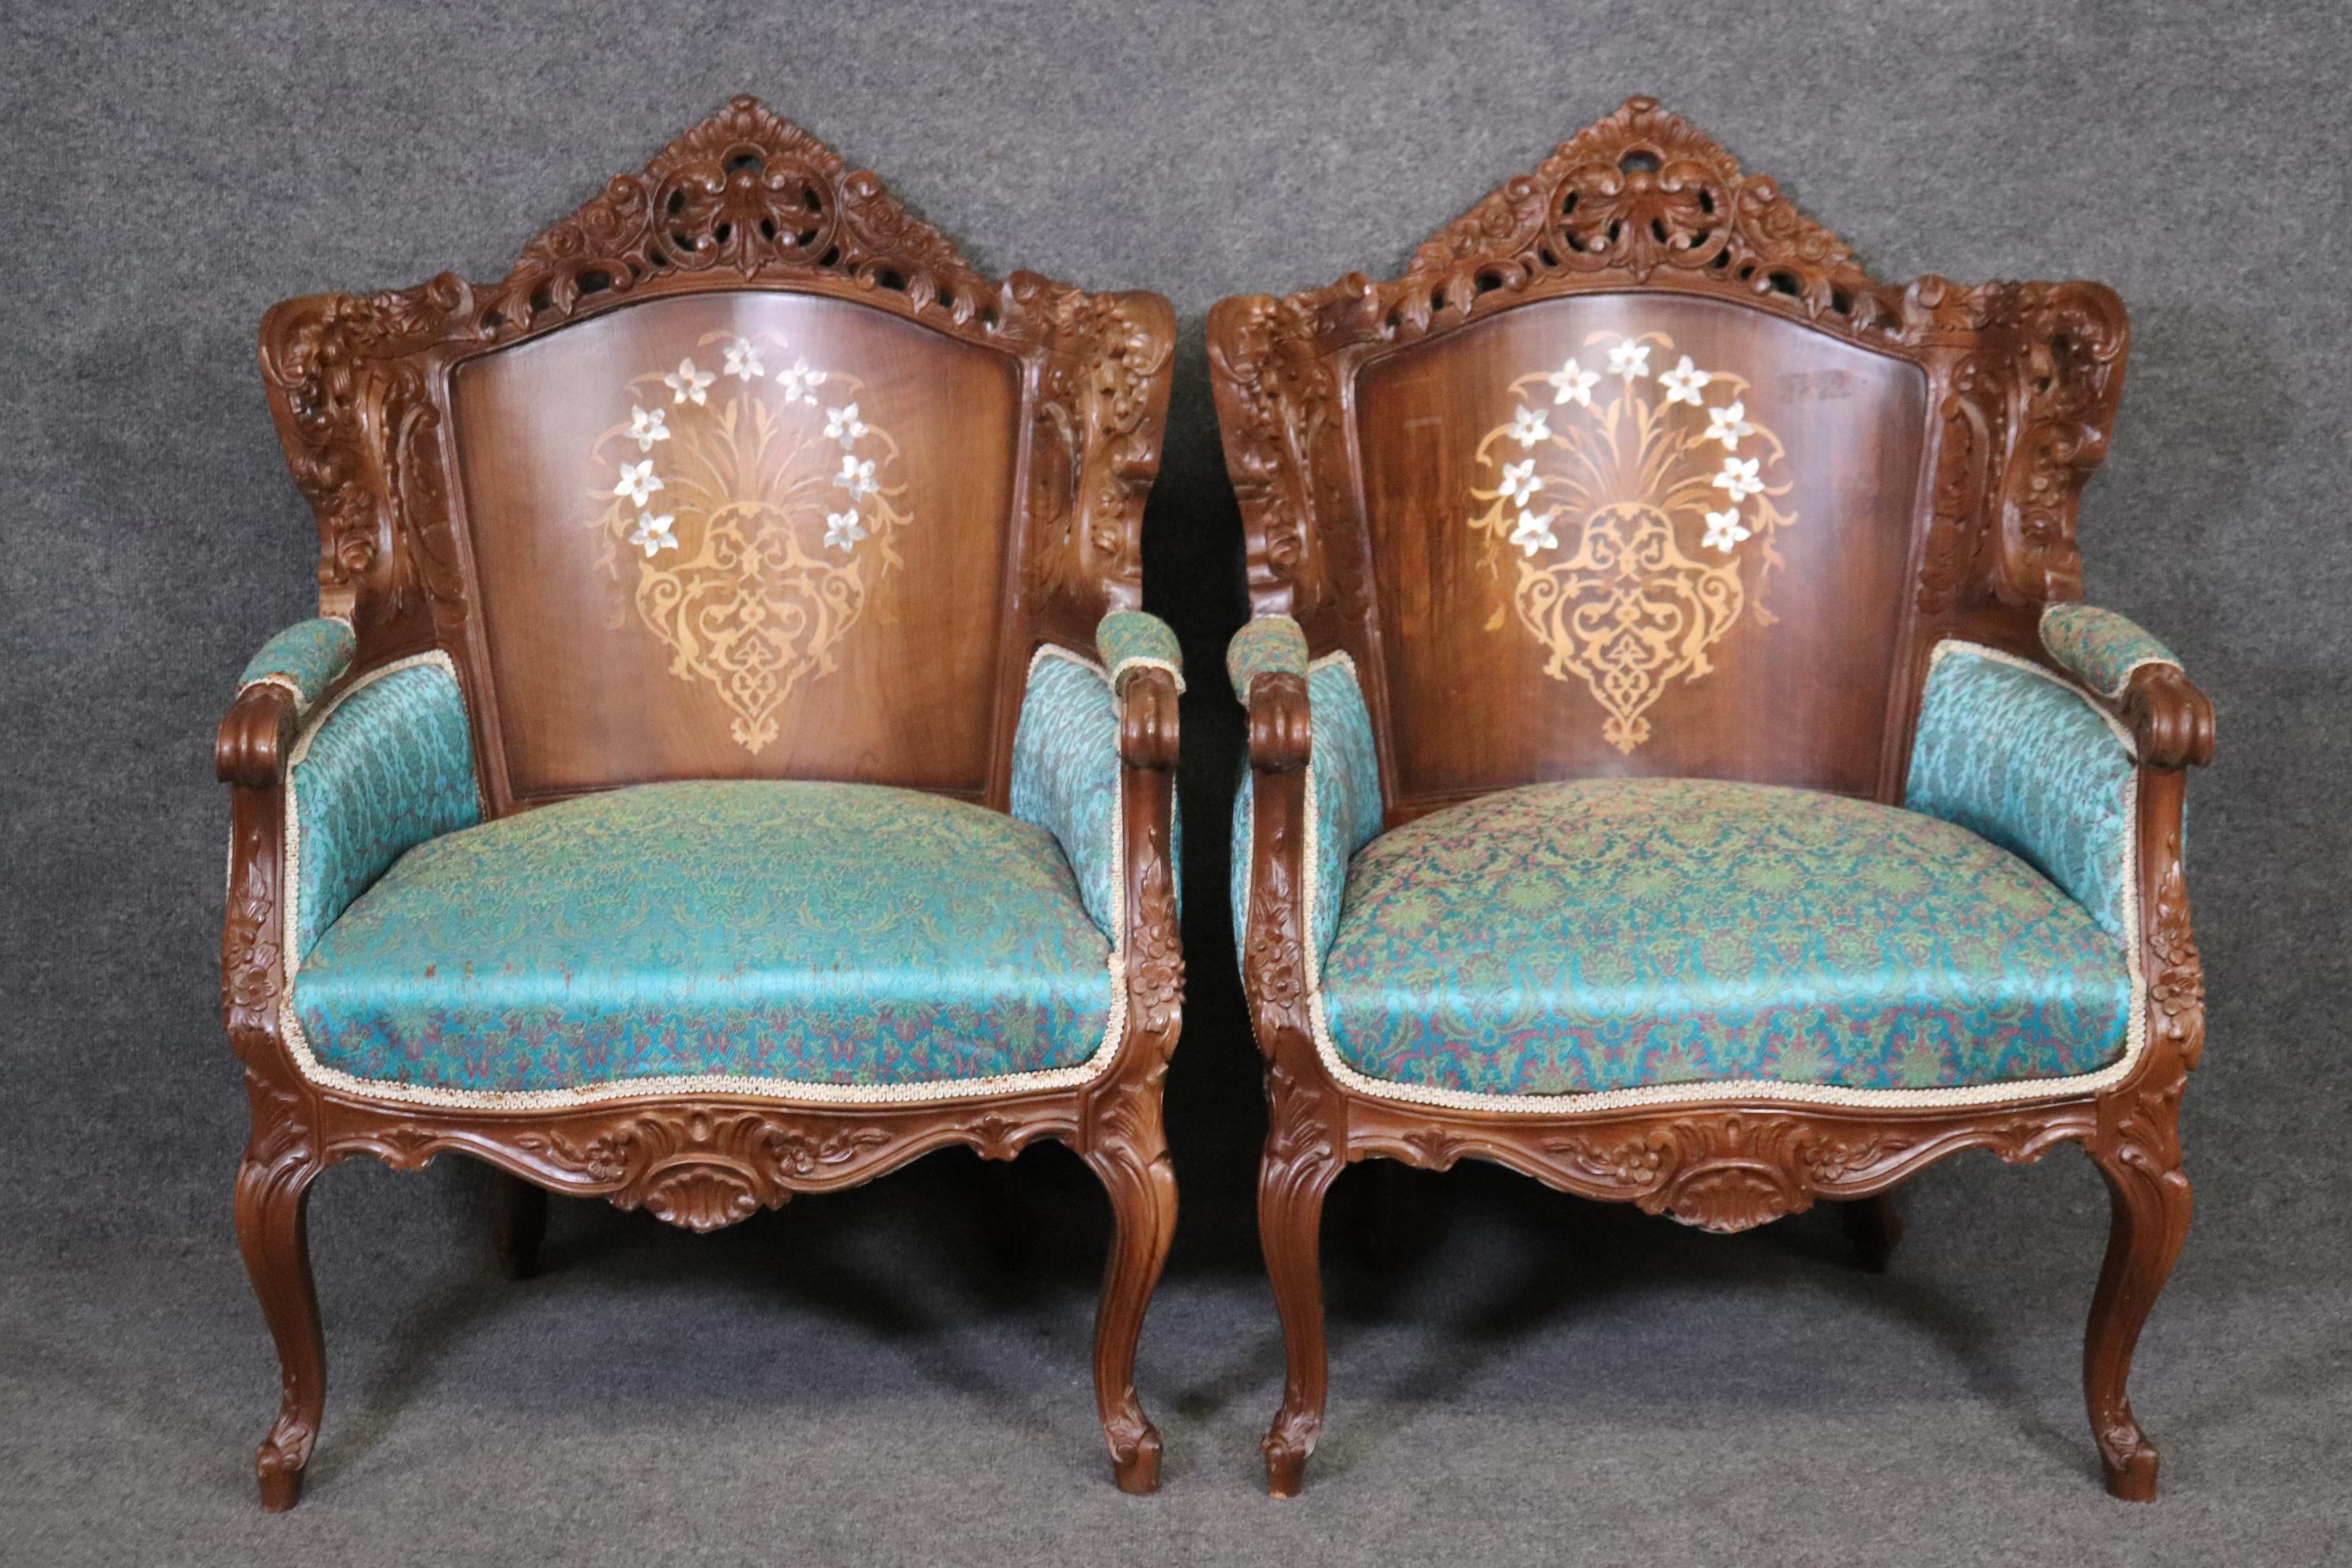 Abmessungen- H: 39 1/4in B: 27 3/4in T: 28in SH: 18 1/2in 
Dieses Paar geschnitzte Sessel im Louis XV-Stil Bergeres mit Perlmutt-Dekoration sind wirklich einzigartig und ein hübsches Paar Stühle, die perfekt sind, wenn Sie schauen, um ein schönes